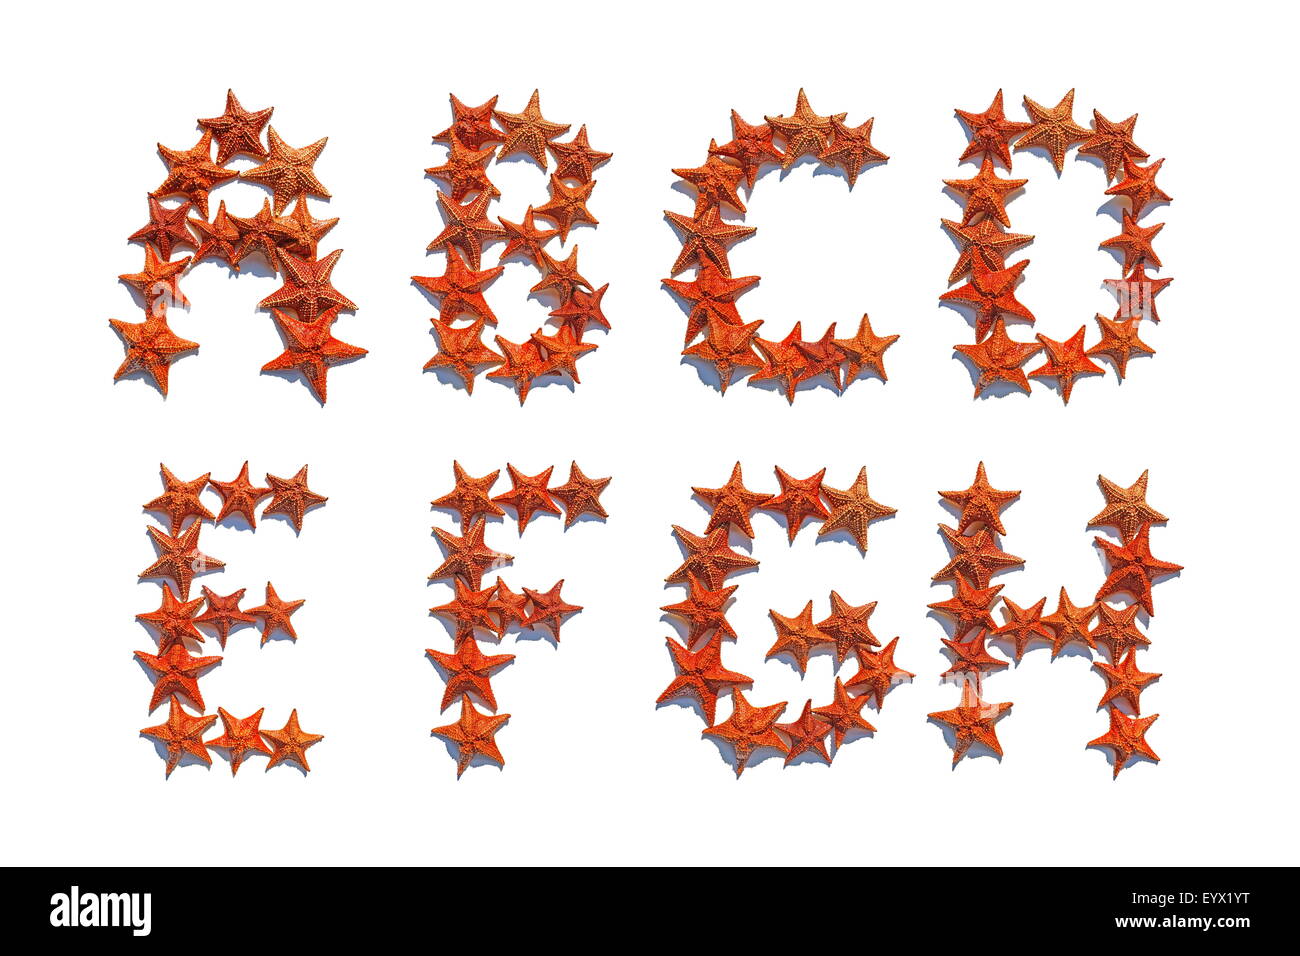 Alfabeto lettere fatte di reale starfish isolati su sfondo bianco, lettere da A ad H, parte 1 di 3 Foto Stock